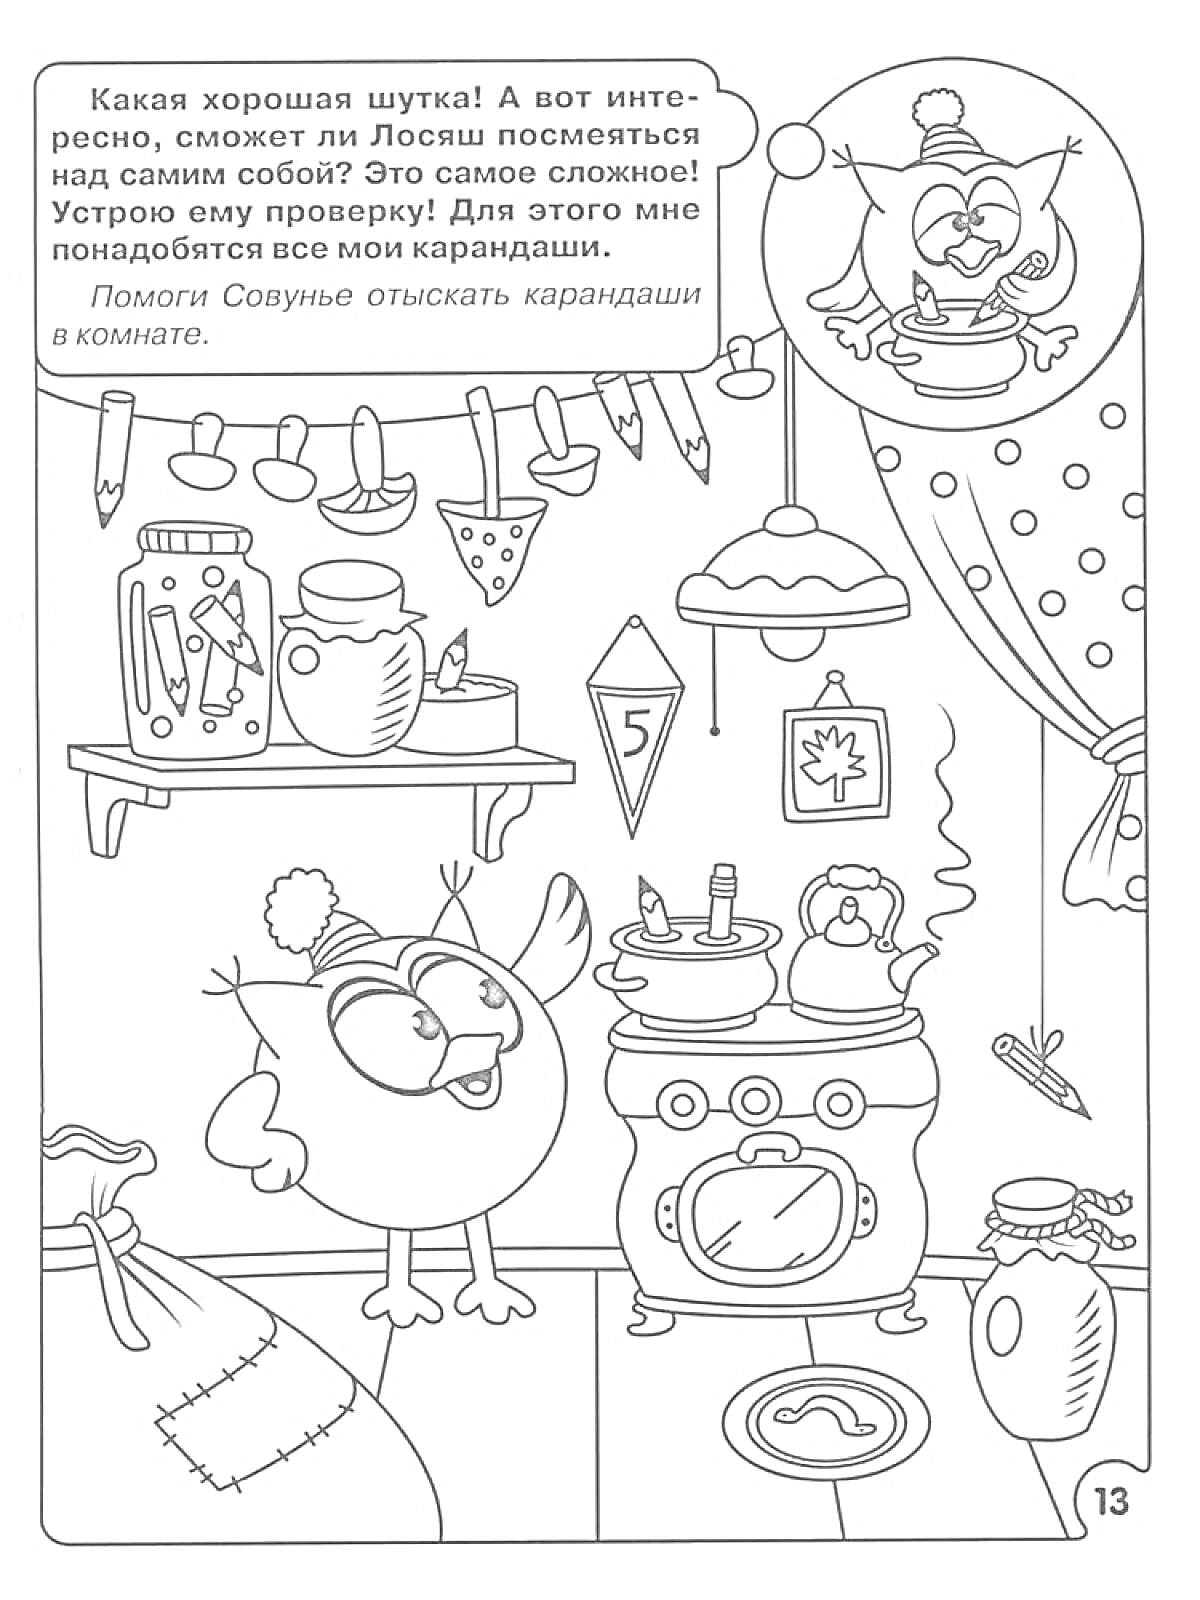 Раскраска Совушка в комнате у плиты с праздничными украшениями, чайником и напитком, поможет найти карандаши